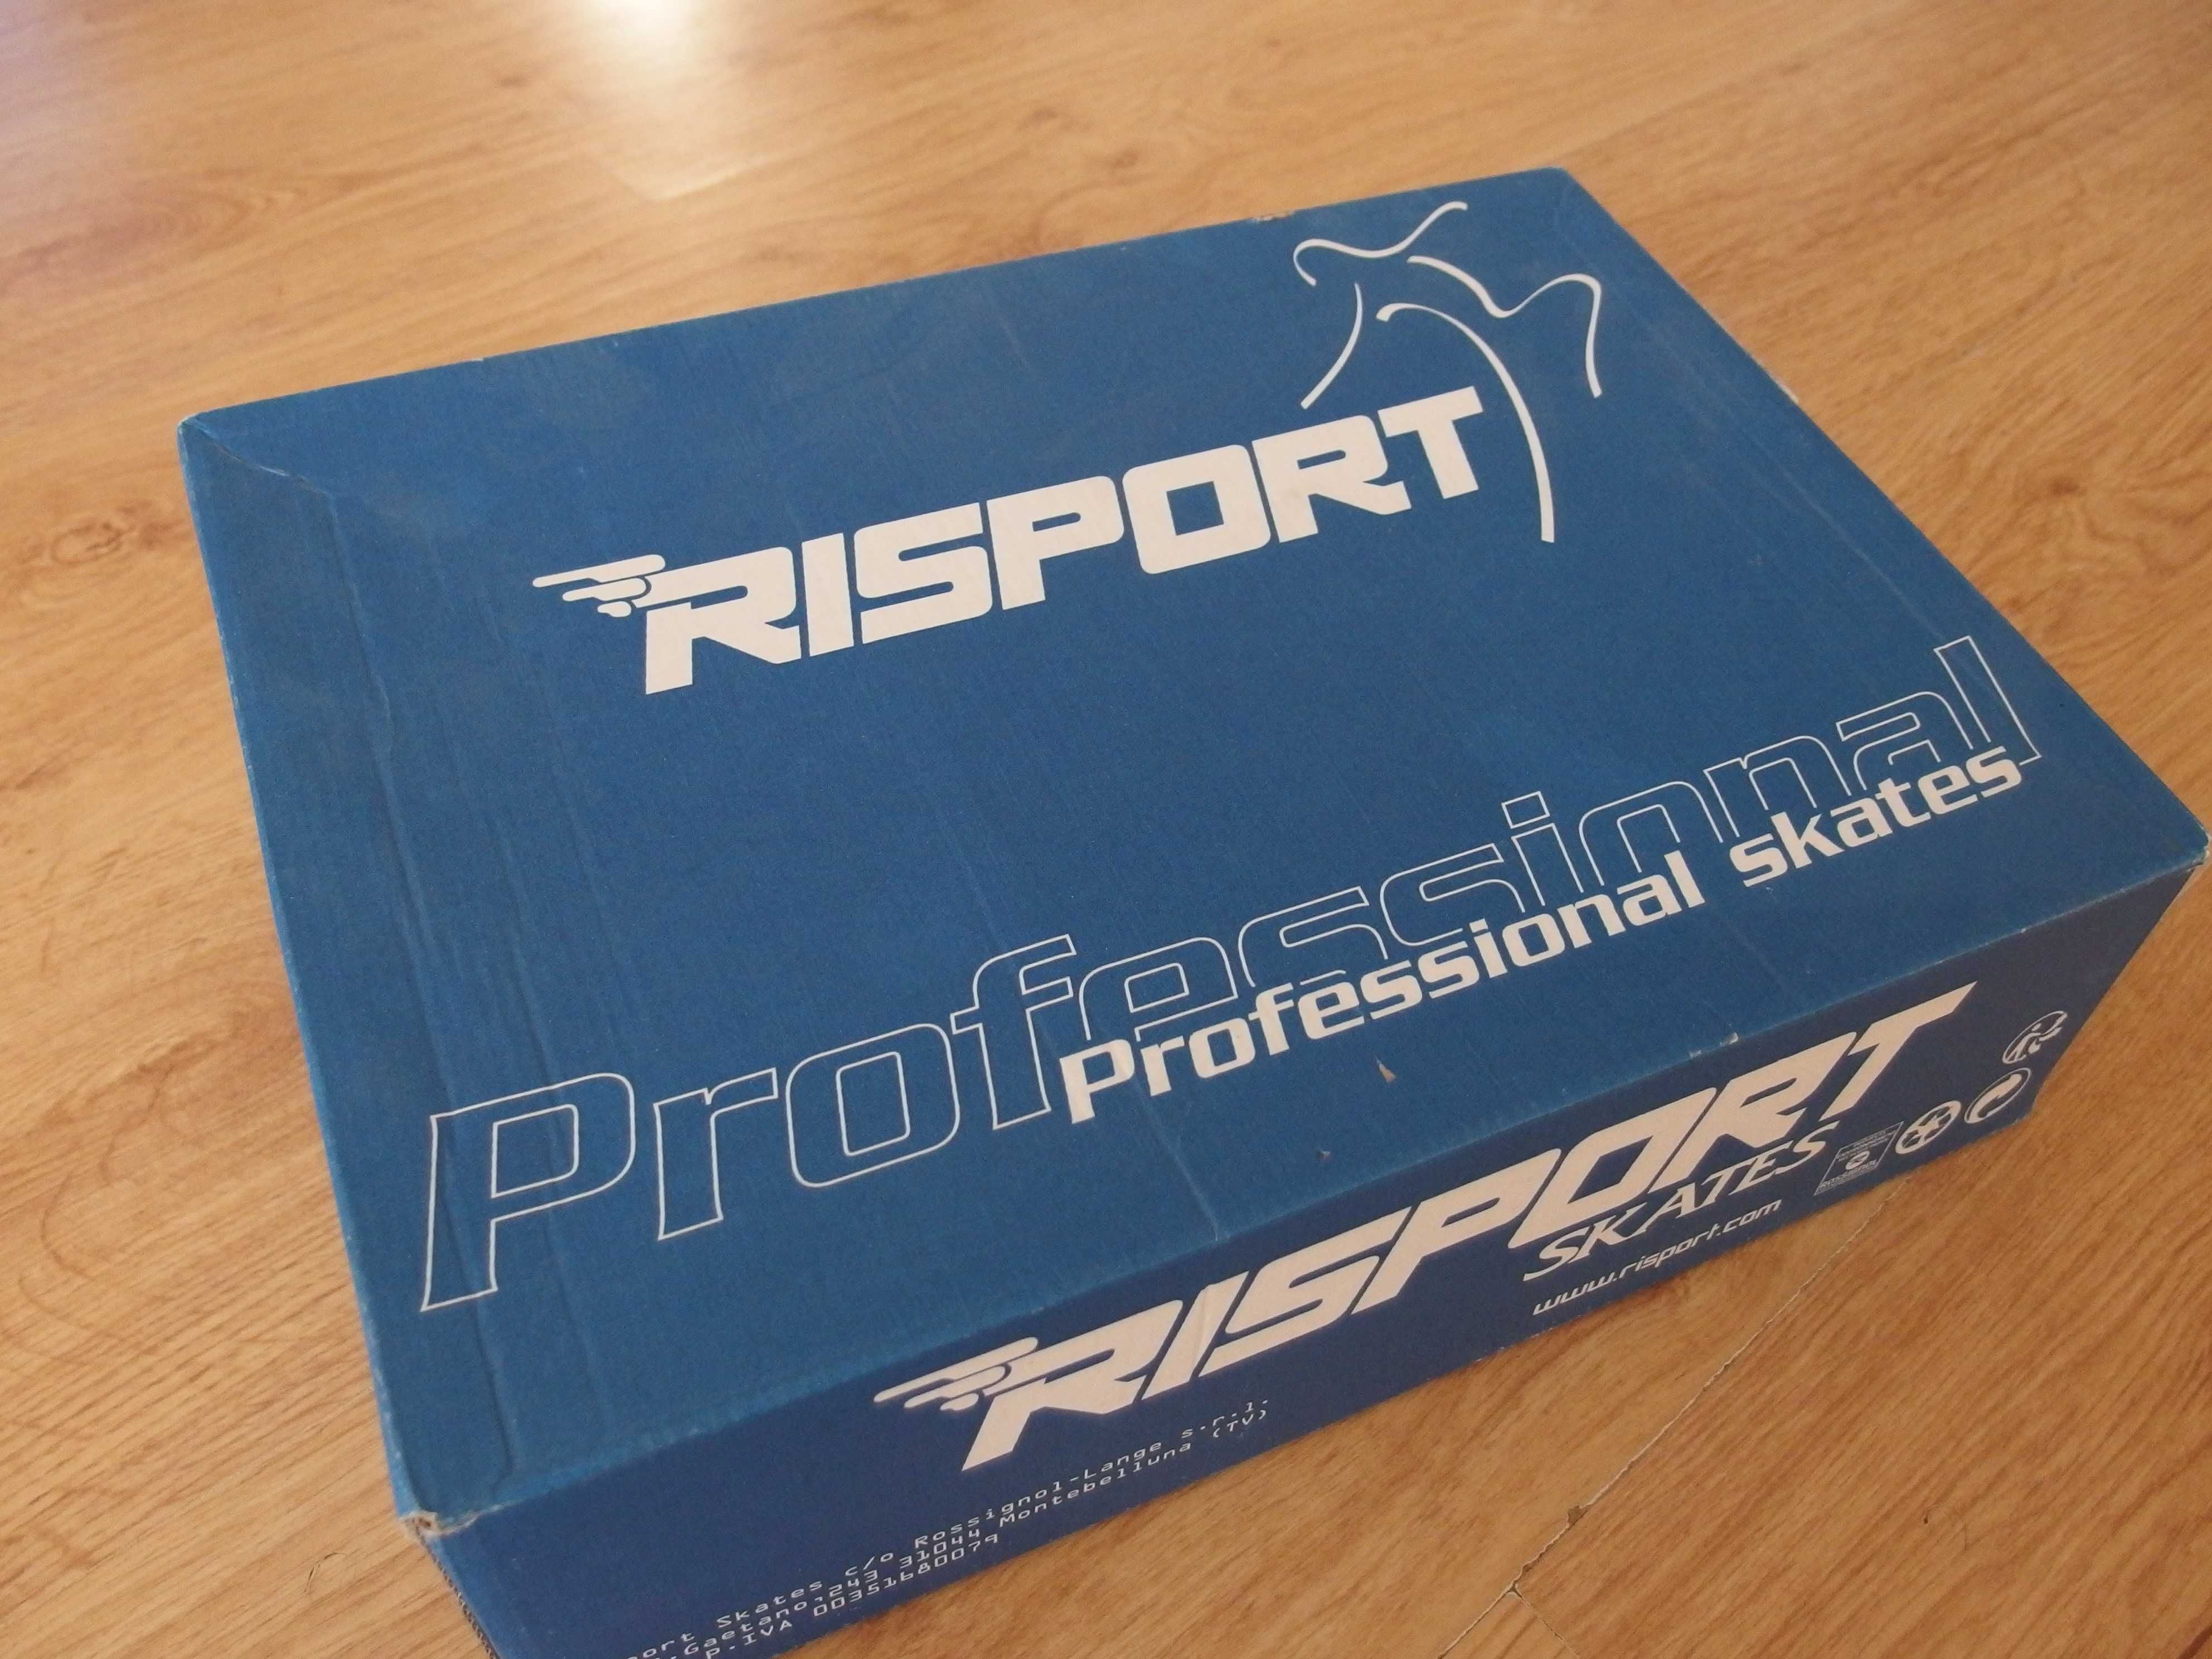 Profesjonalne łyżwy renomowanej marki Risport, rozmiar 220 (33)